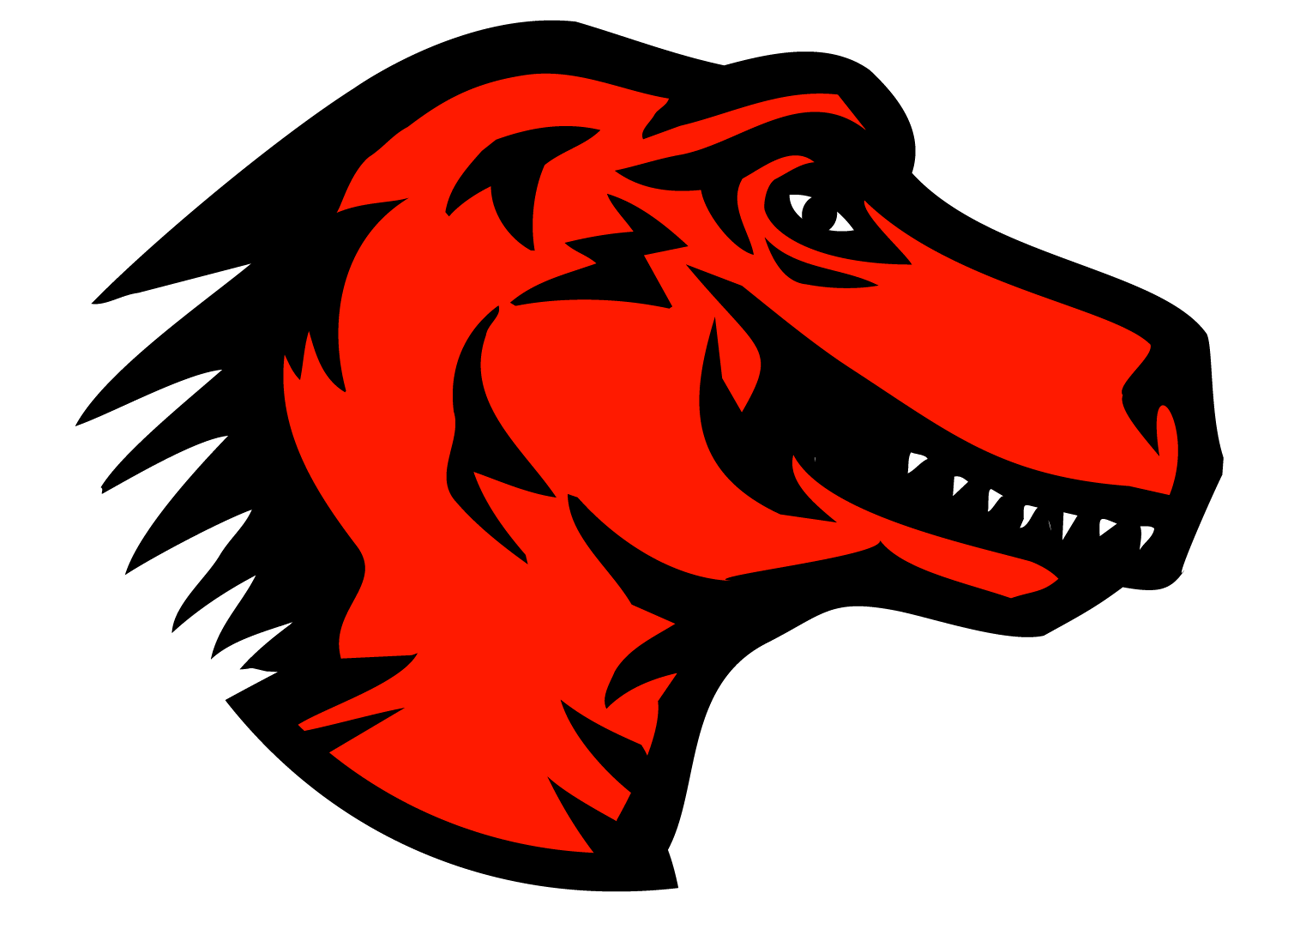 Dinosaur Logo - File:Mozilla dinosaur head logo.png - Wikimedia Commons